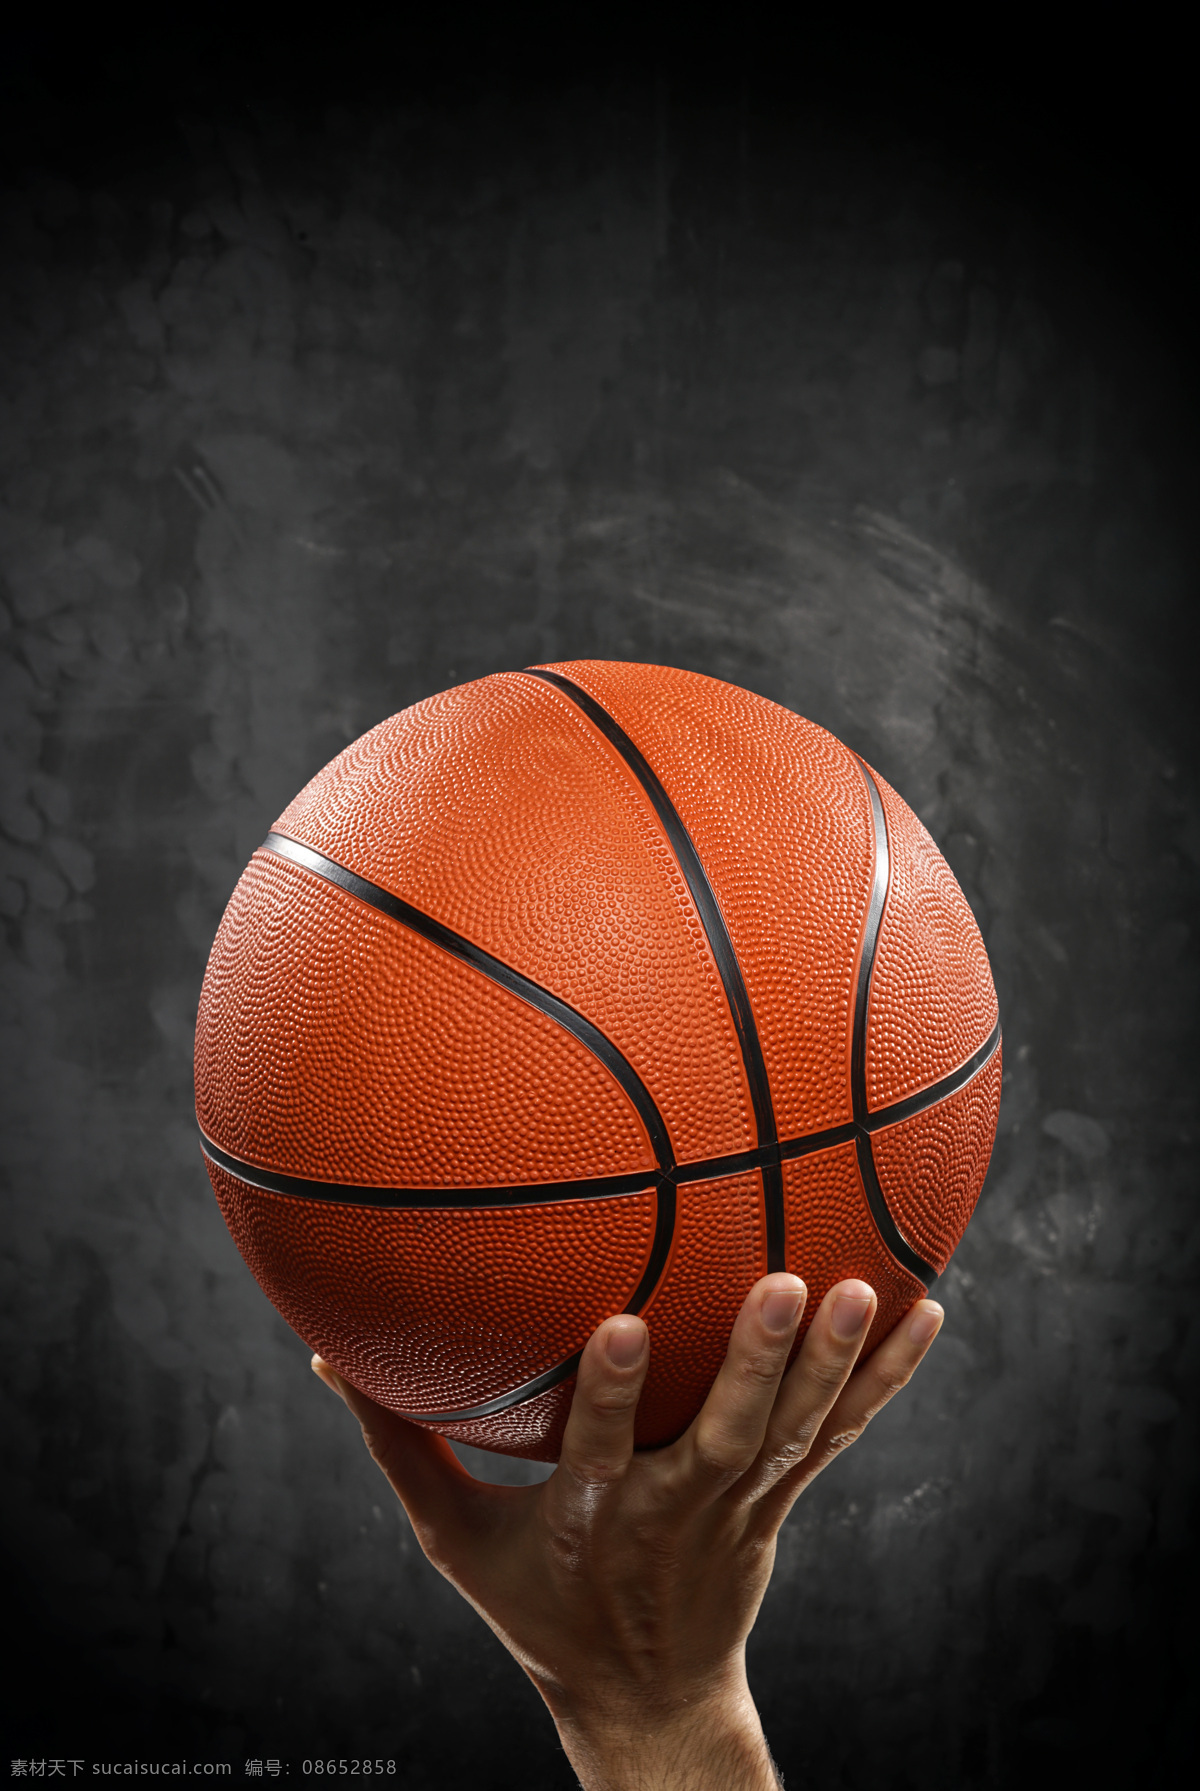 唯美 炫酷 篮球 球 运动 体育 生活百科 体育用品